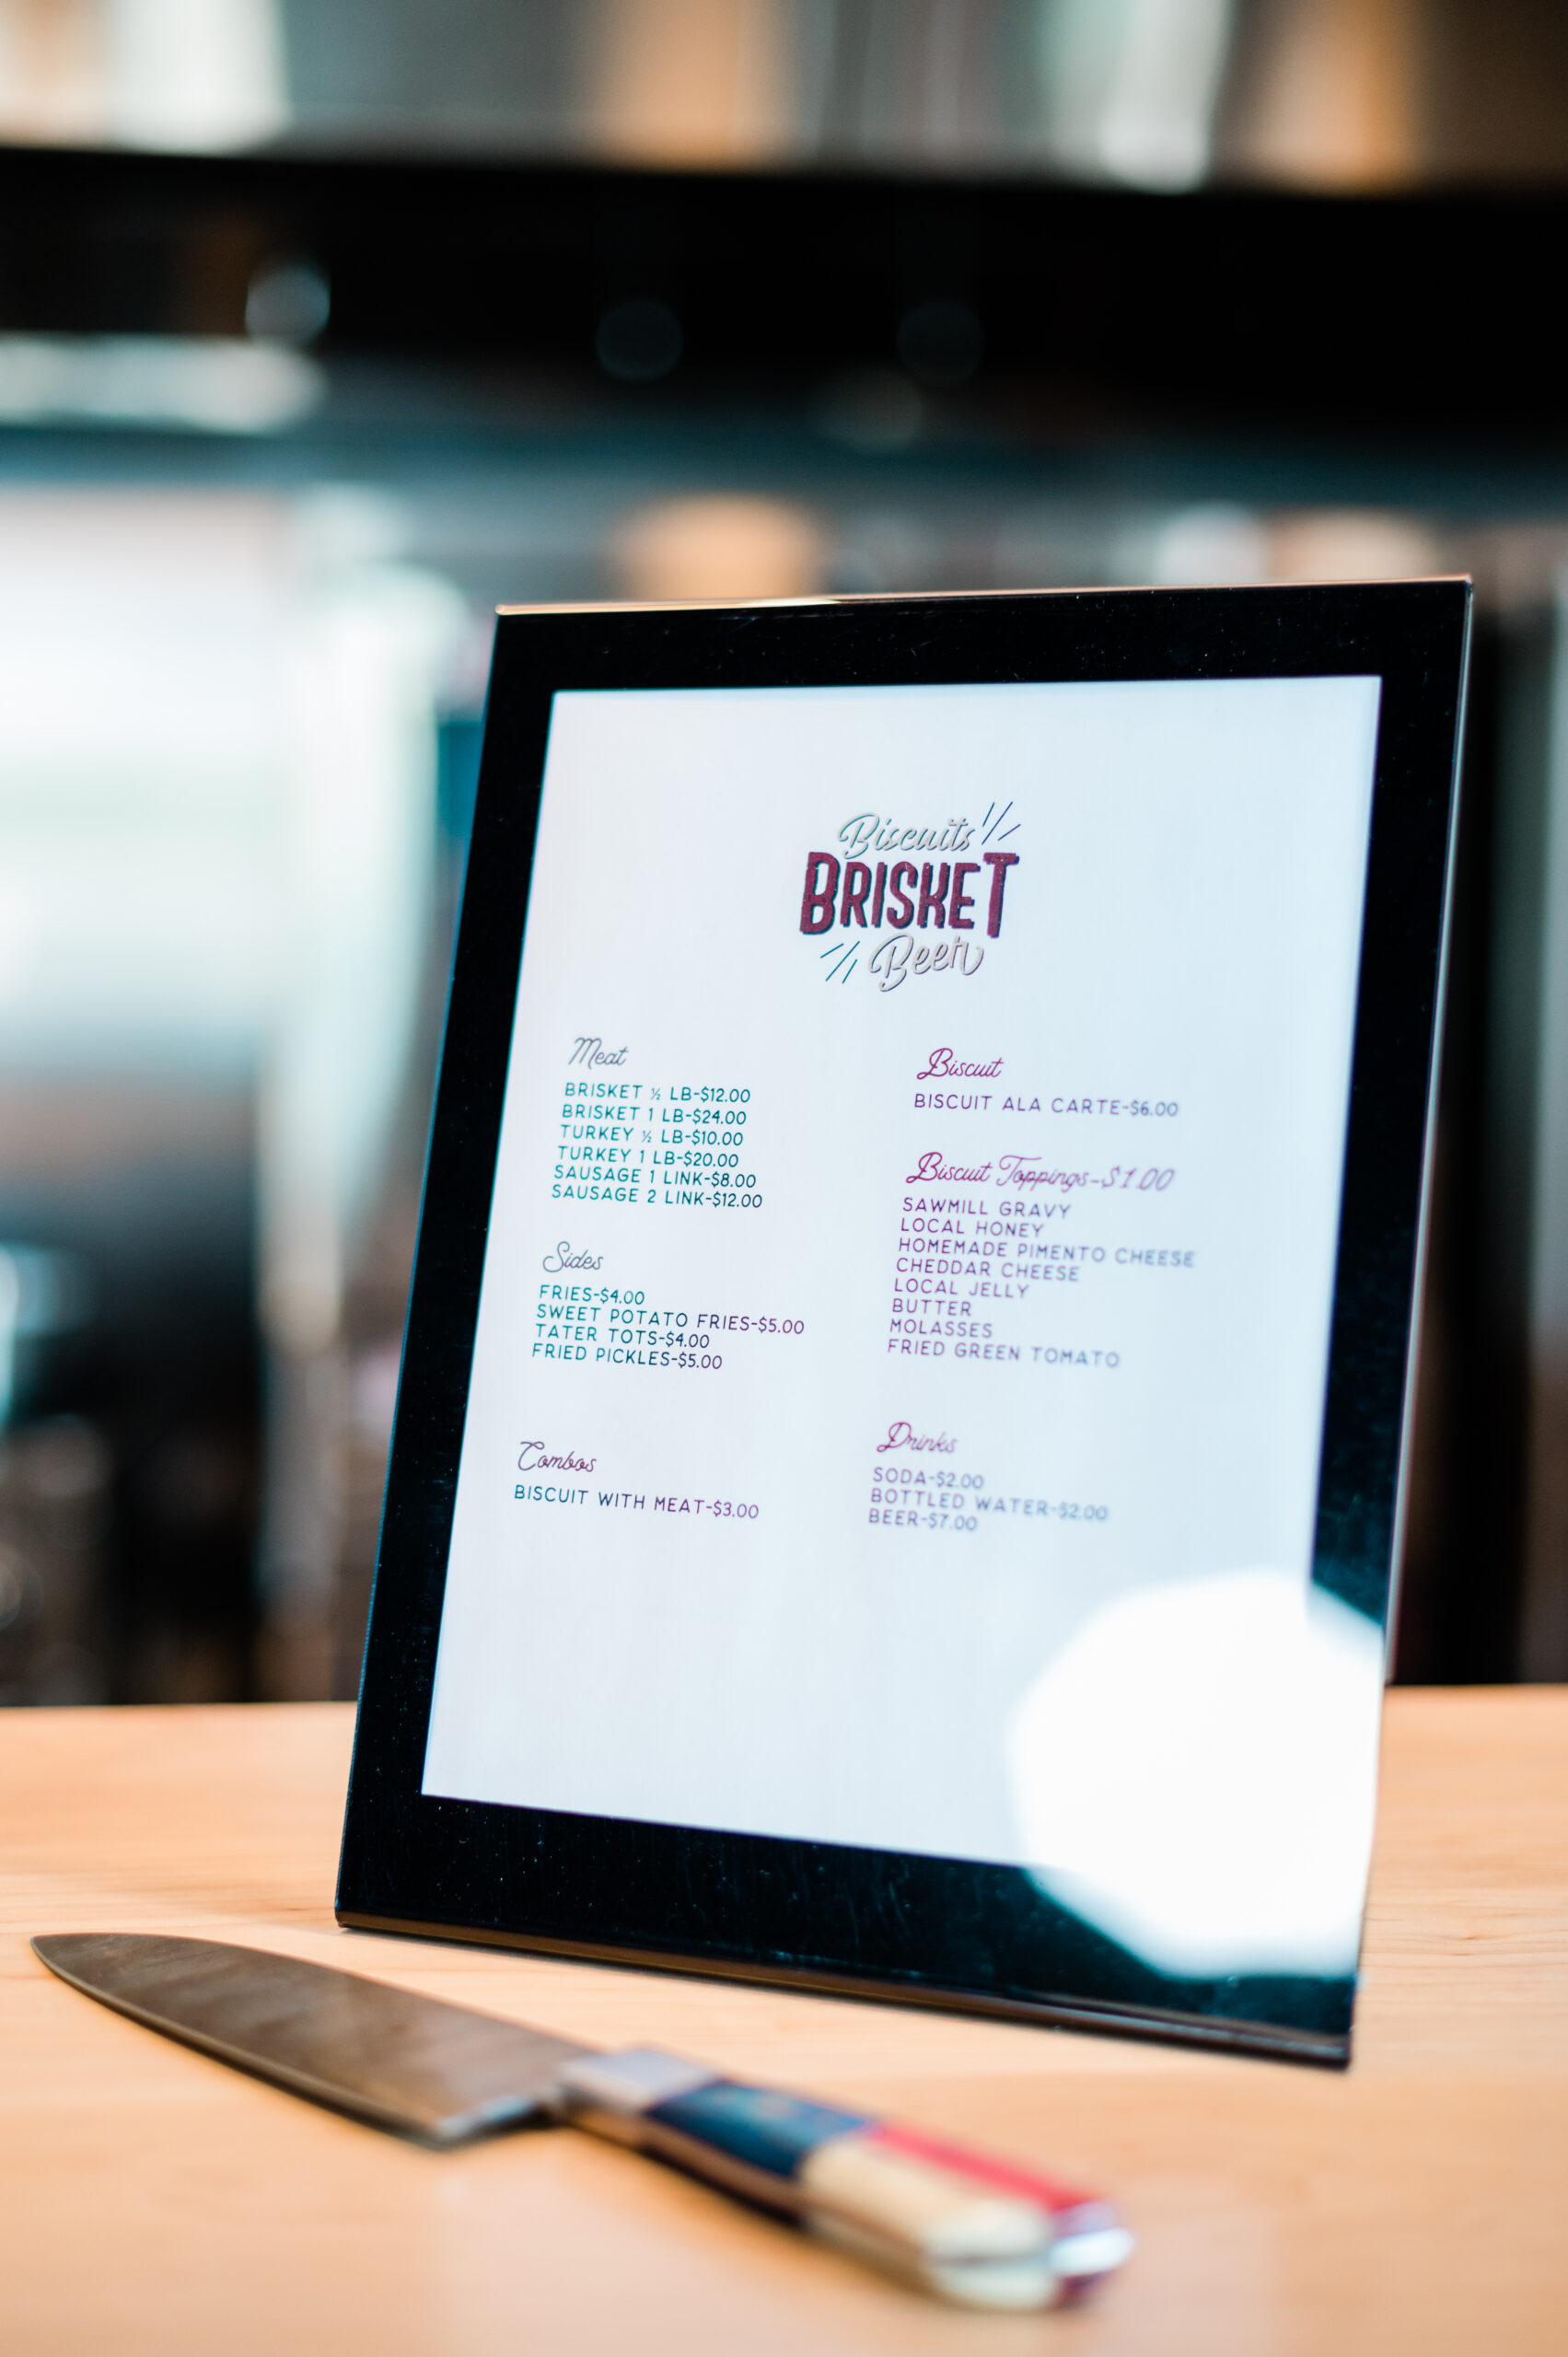 A menu at Biscuits Brisket & Beer in High Point, NC.